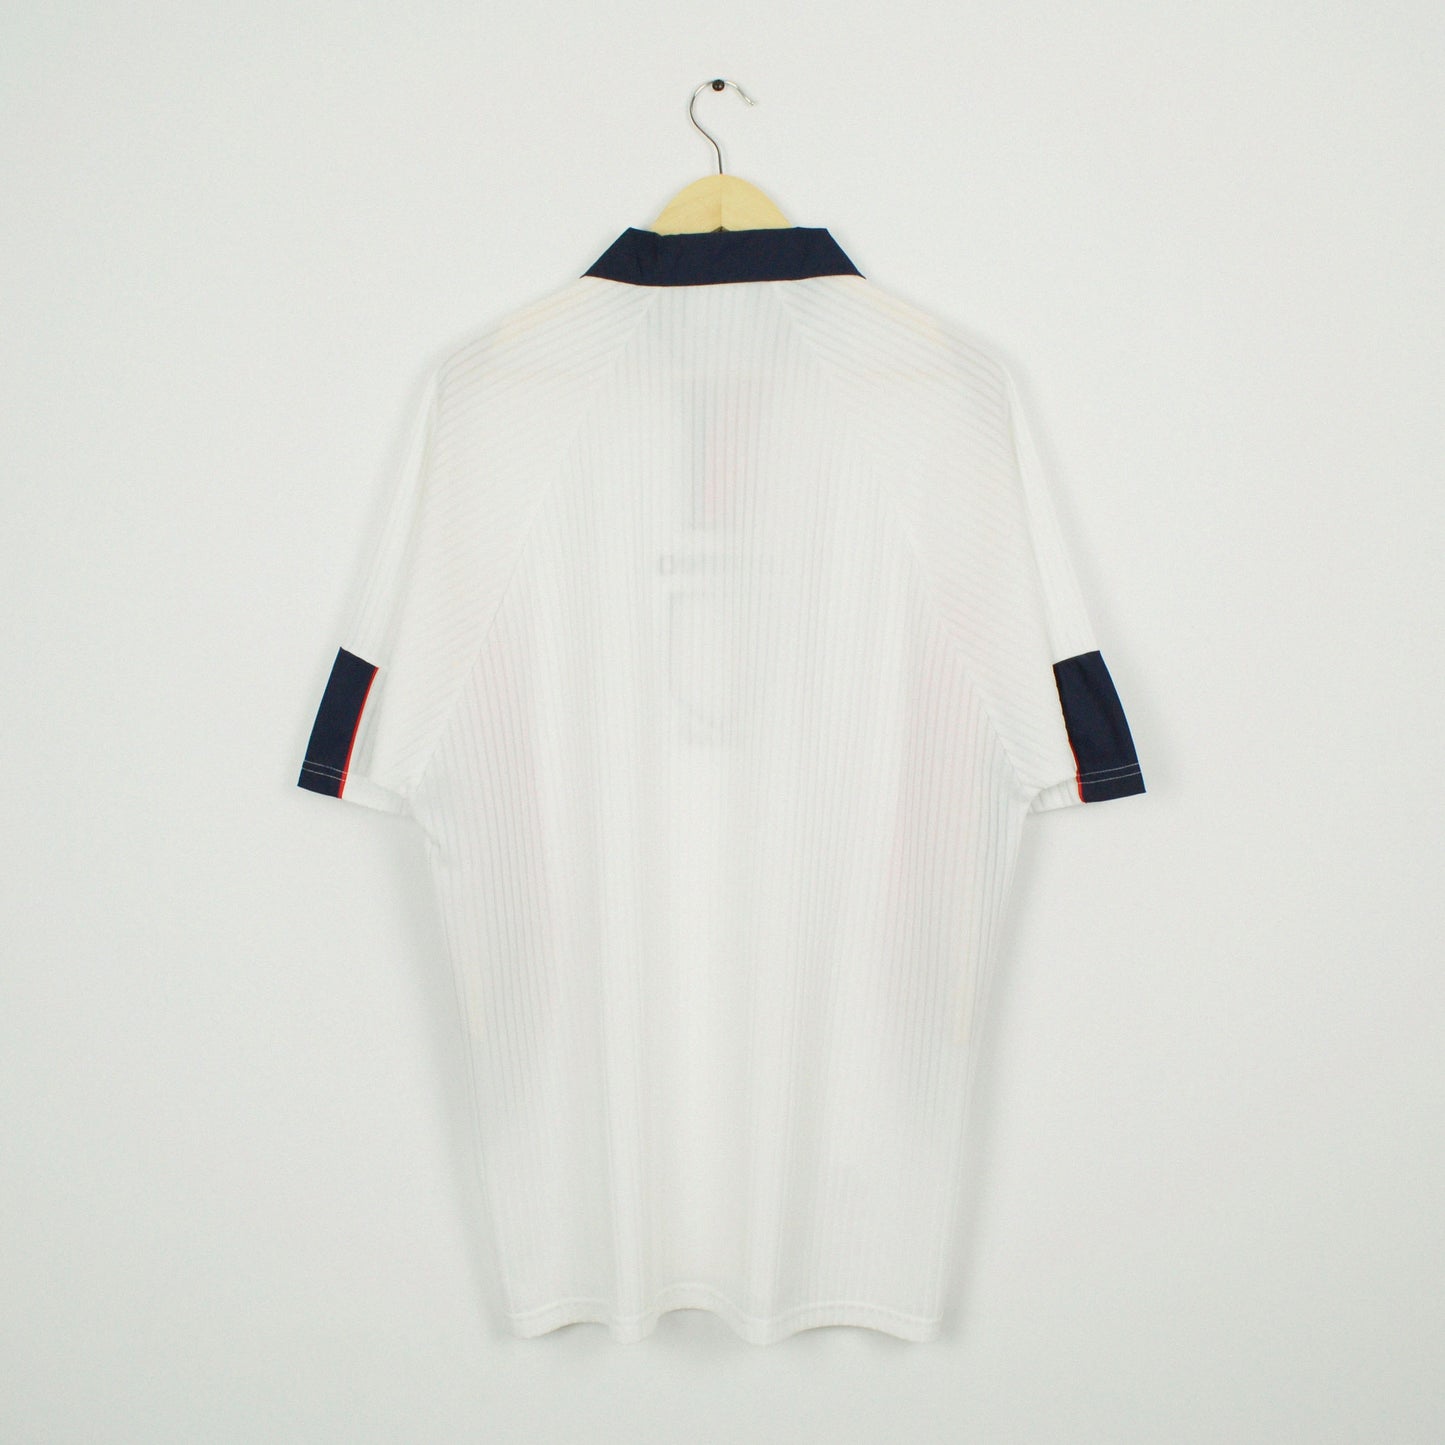 1997-98 Umbro England Home Shirt XL